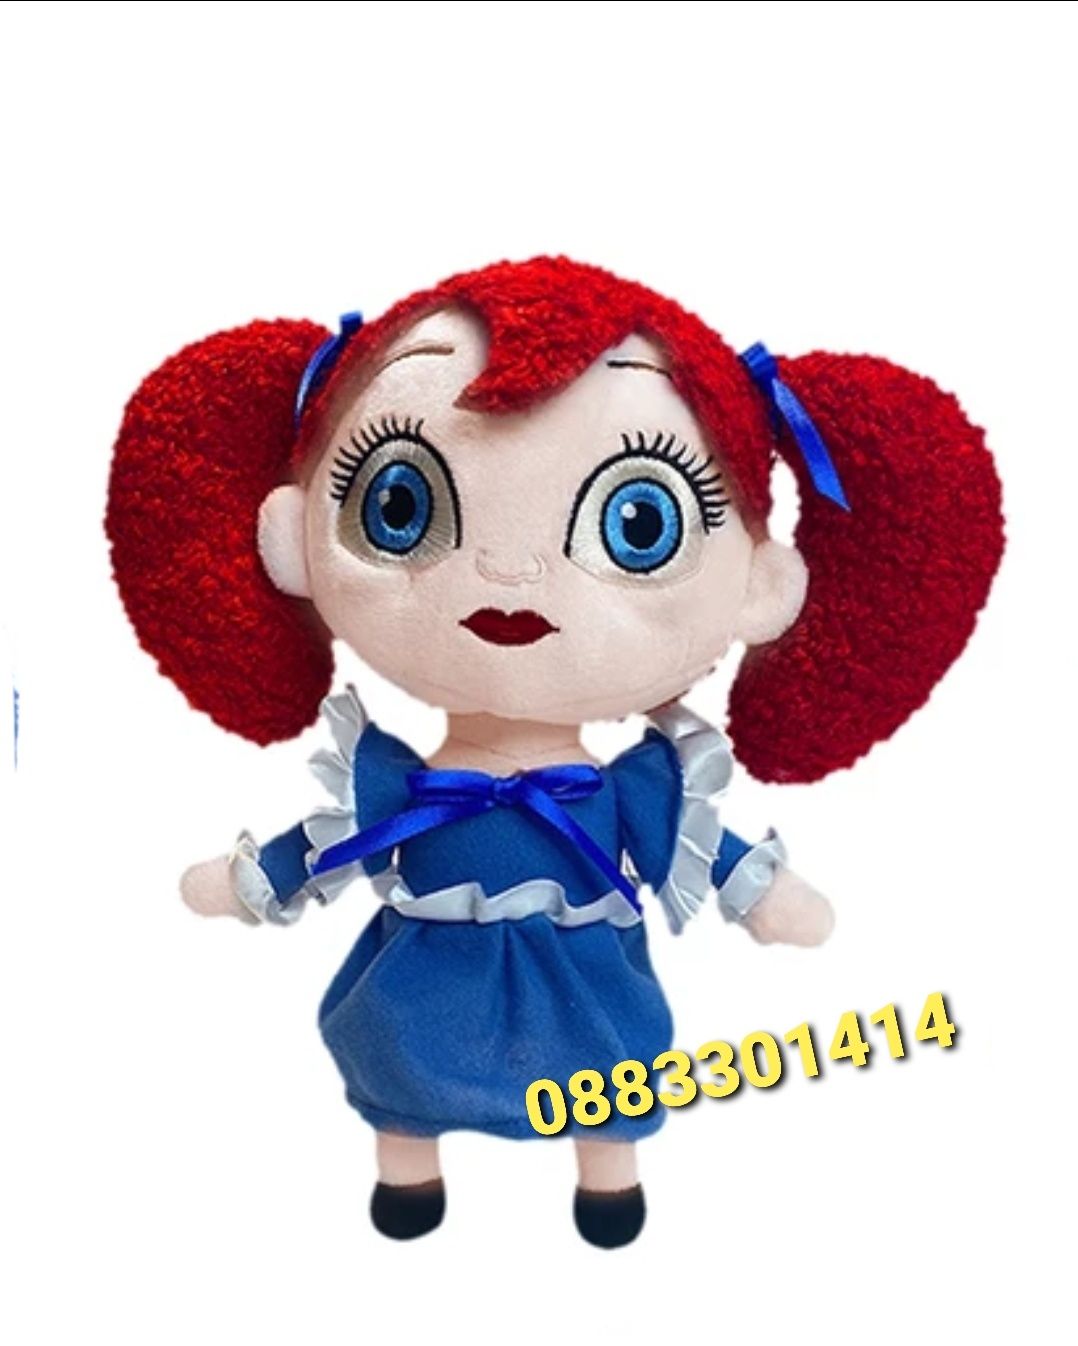 Хъги Лъги кукла момиче Poppy playtime Huggy Wuggy Girl Doll Киси Миси